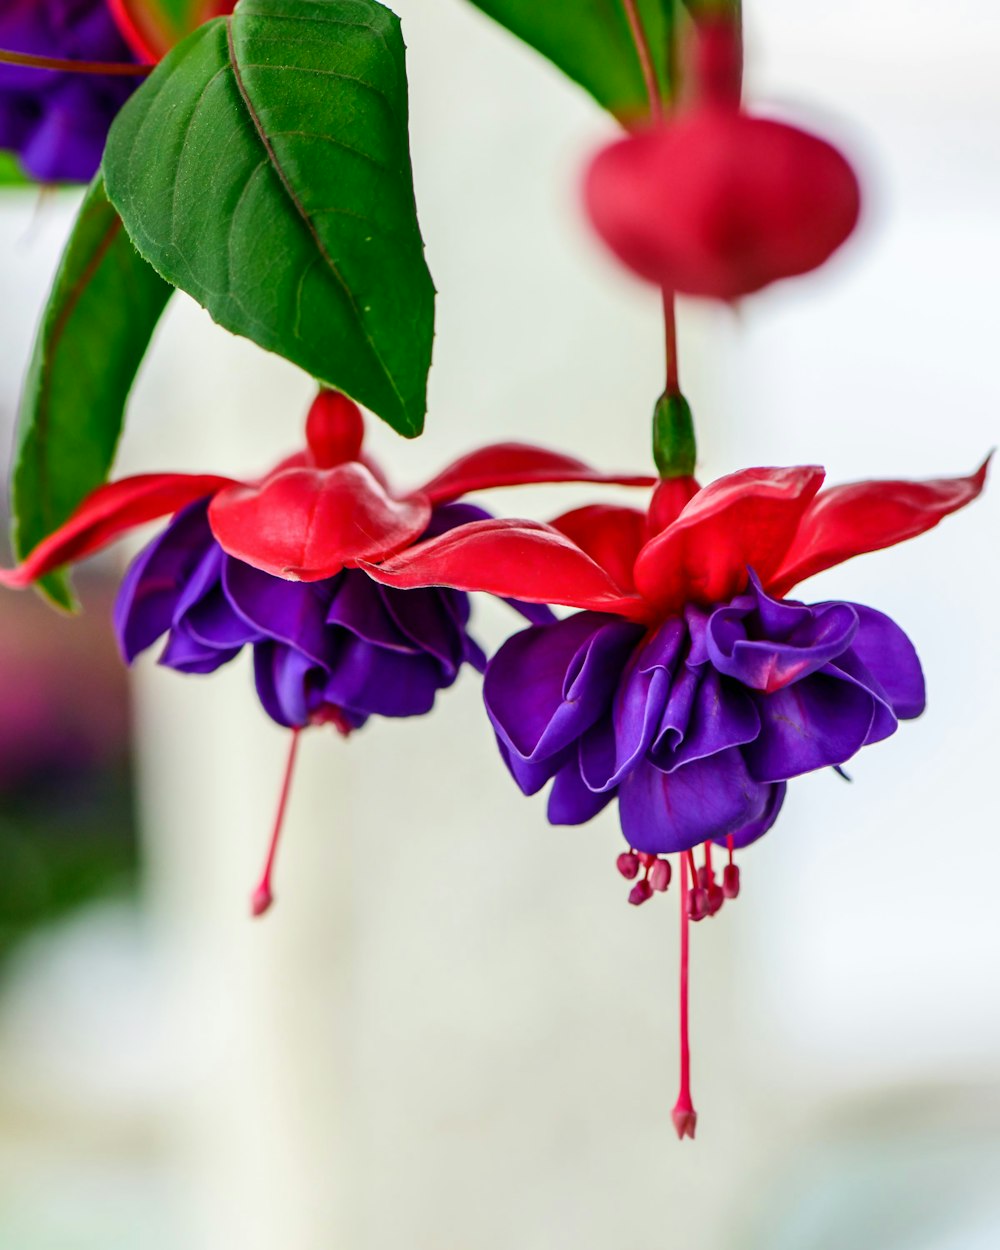 咲き誇る紫と赤のフクシアの花のセレクティブフォーカス撮影